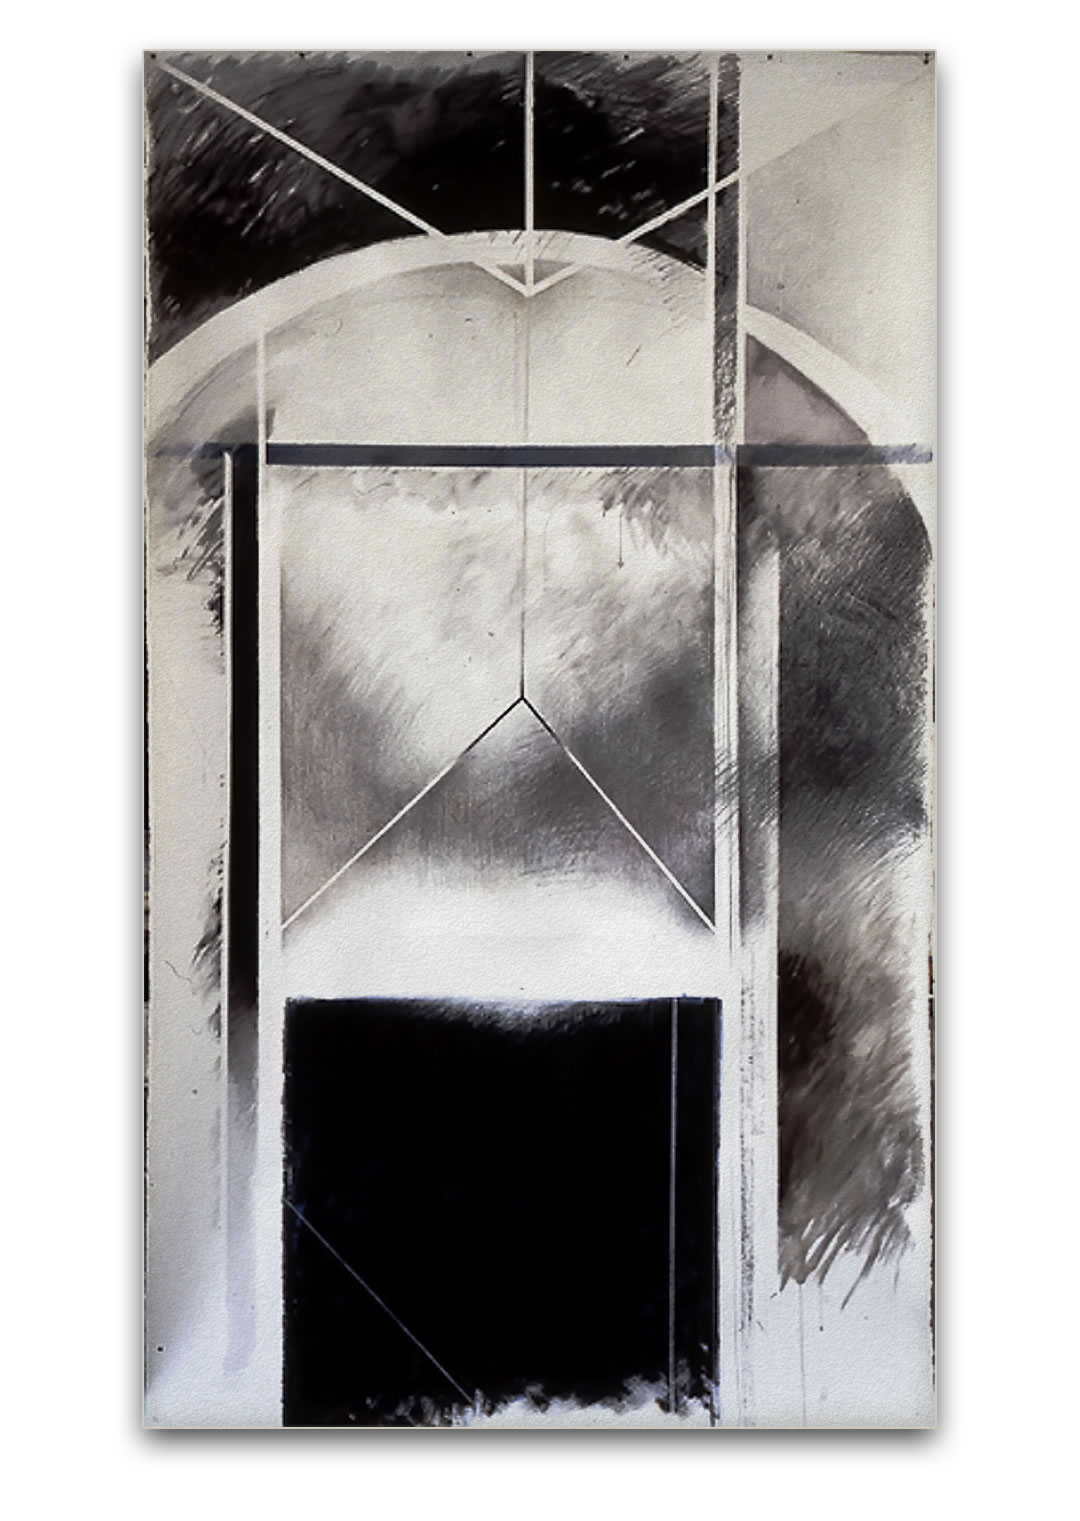 Dessin de Lucienne Cornet / Crayons, lavis, pigments, sur papier Arches / 244 x 100 cm